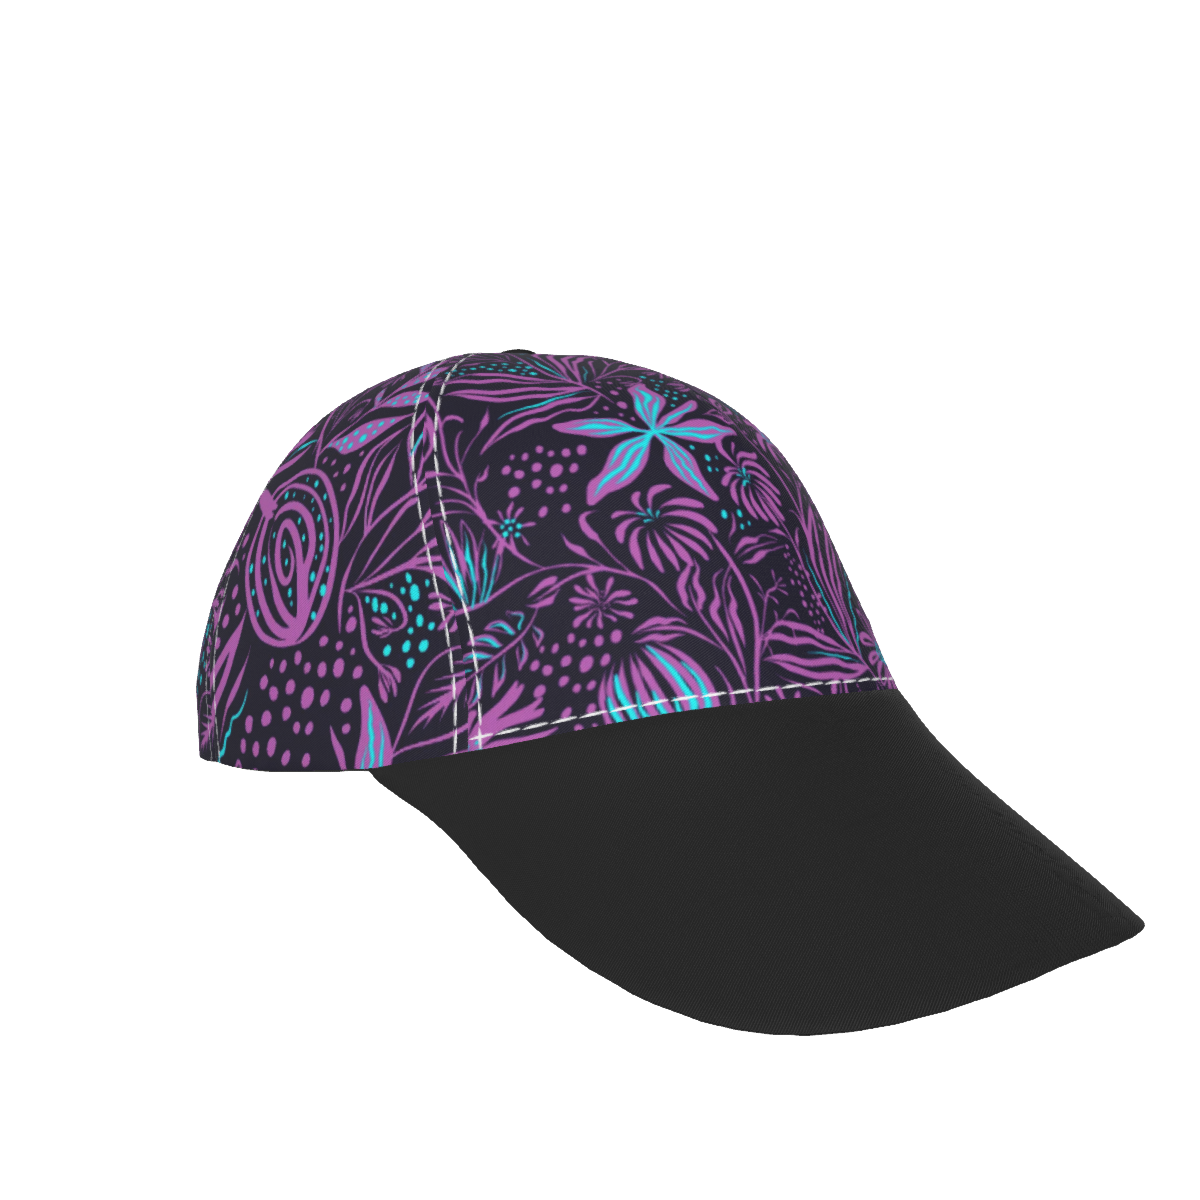 Purple Sheets with Black Peaked Cap - DromedarShop.com Online Boutique